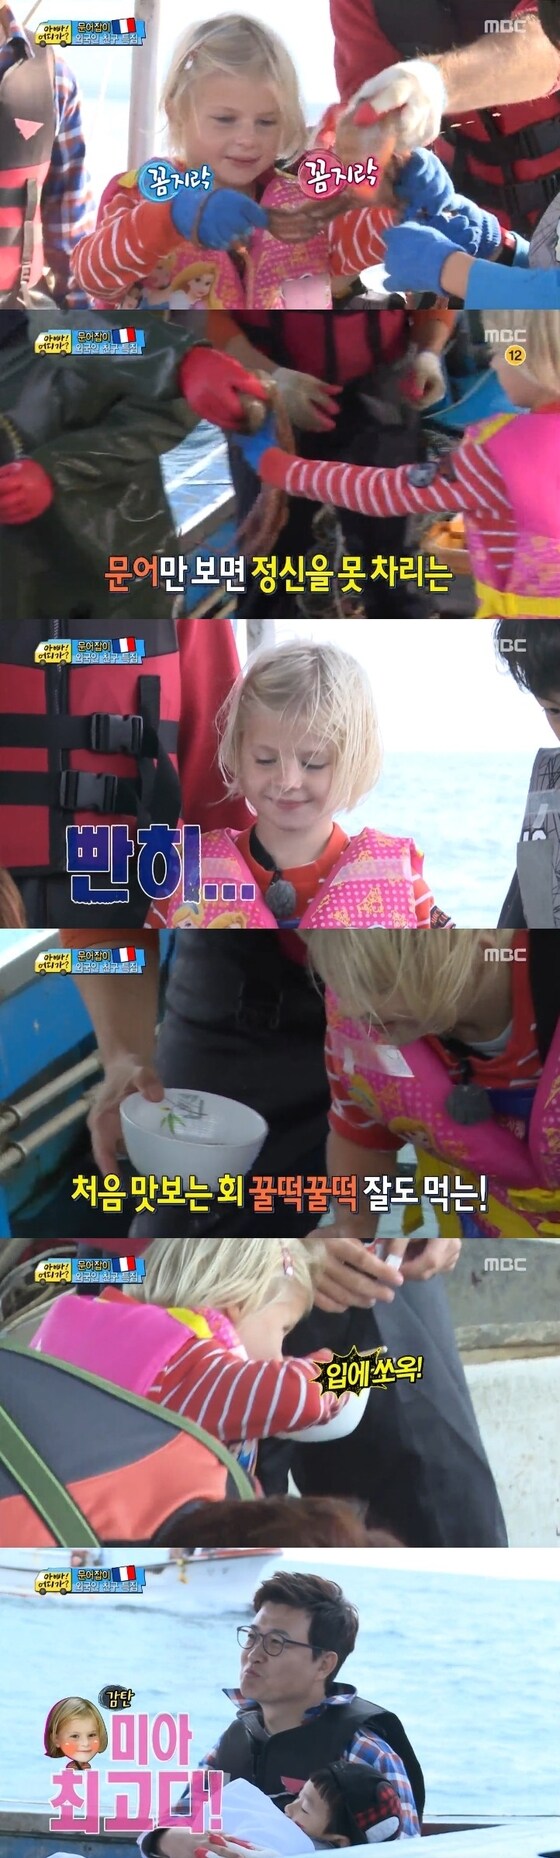 <span>26일 오후 4시50분 방송된 MBC '일밤-아빠 어디가'에서 문어잡이에 나서는 가족들의 모습이 그려졌다. © MBC '일밤-아빠 어디가' 캡처</span>